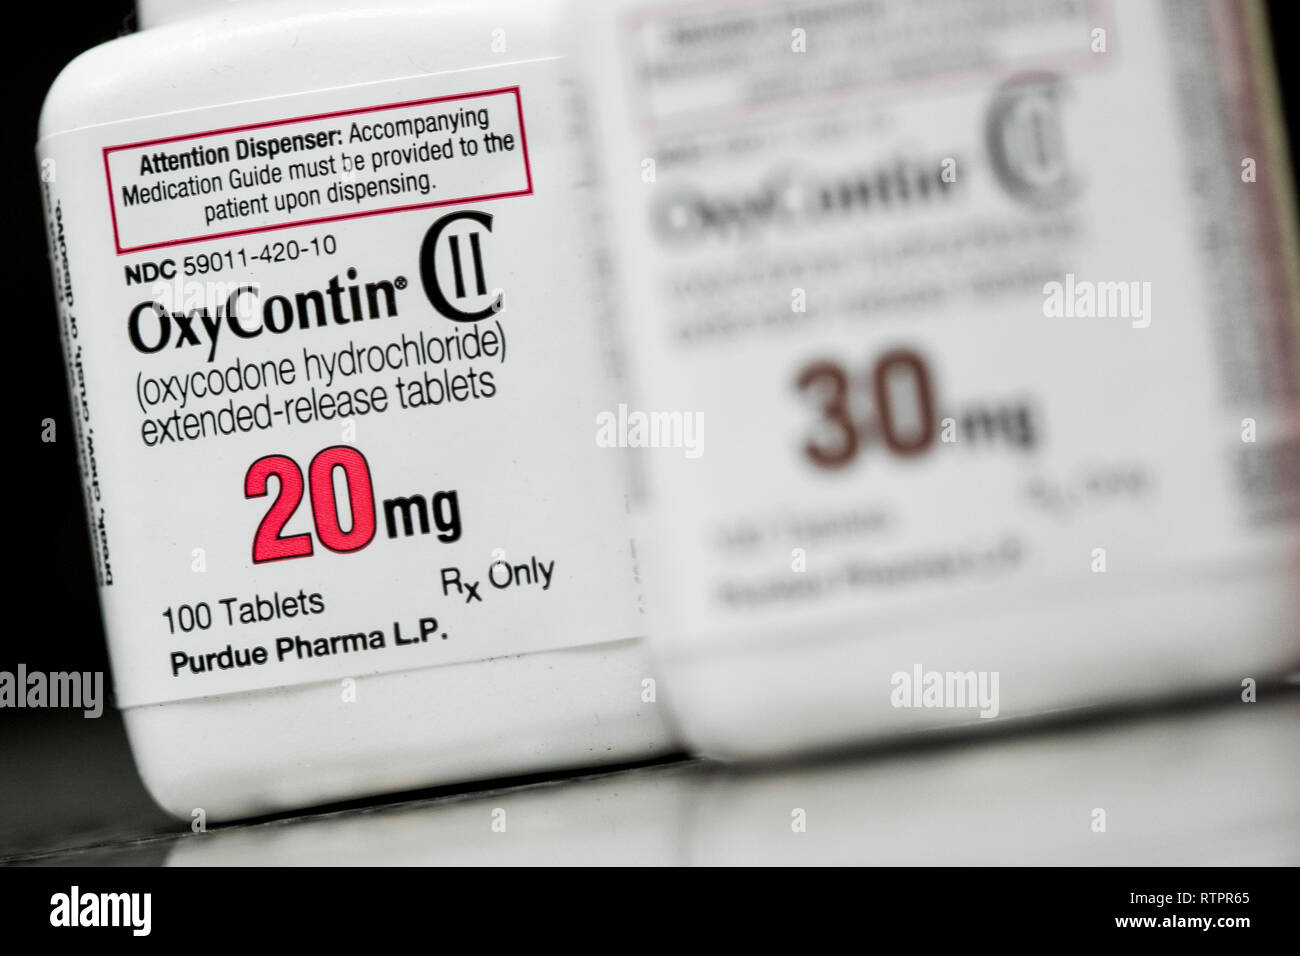 Bottiglie di OxyContin (ossicodone) prescrizione pharmaceuticals fotografato in una farmacia. Foto Stock